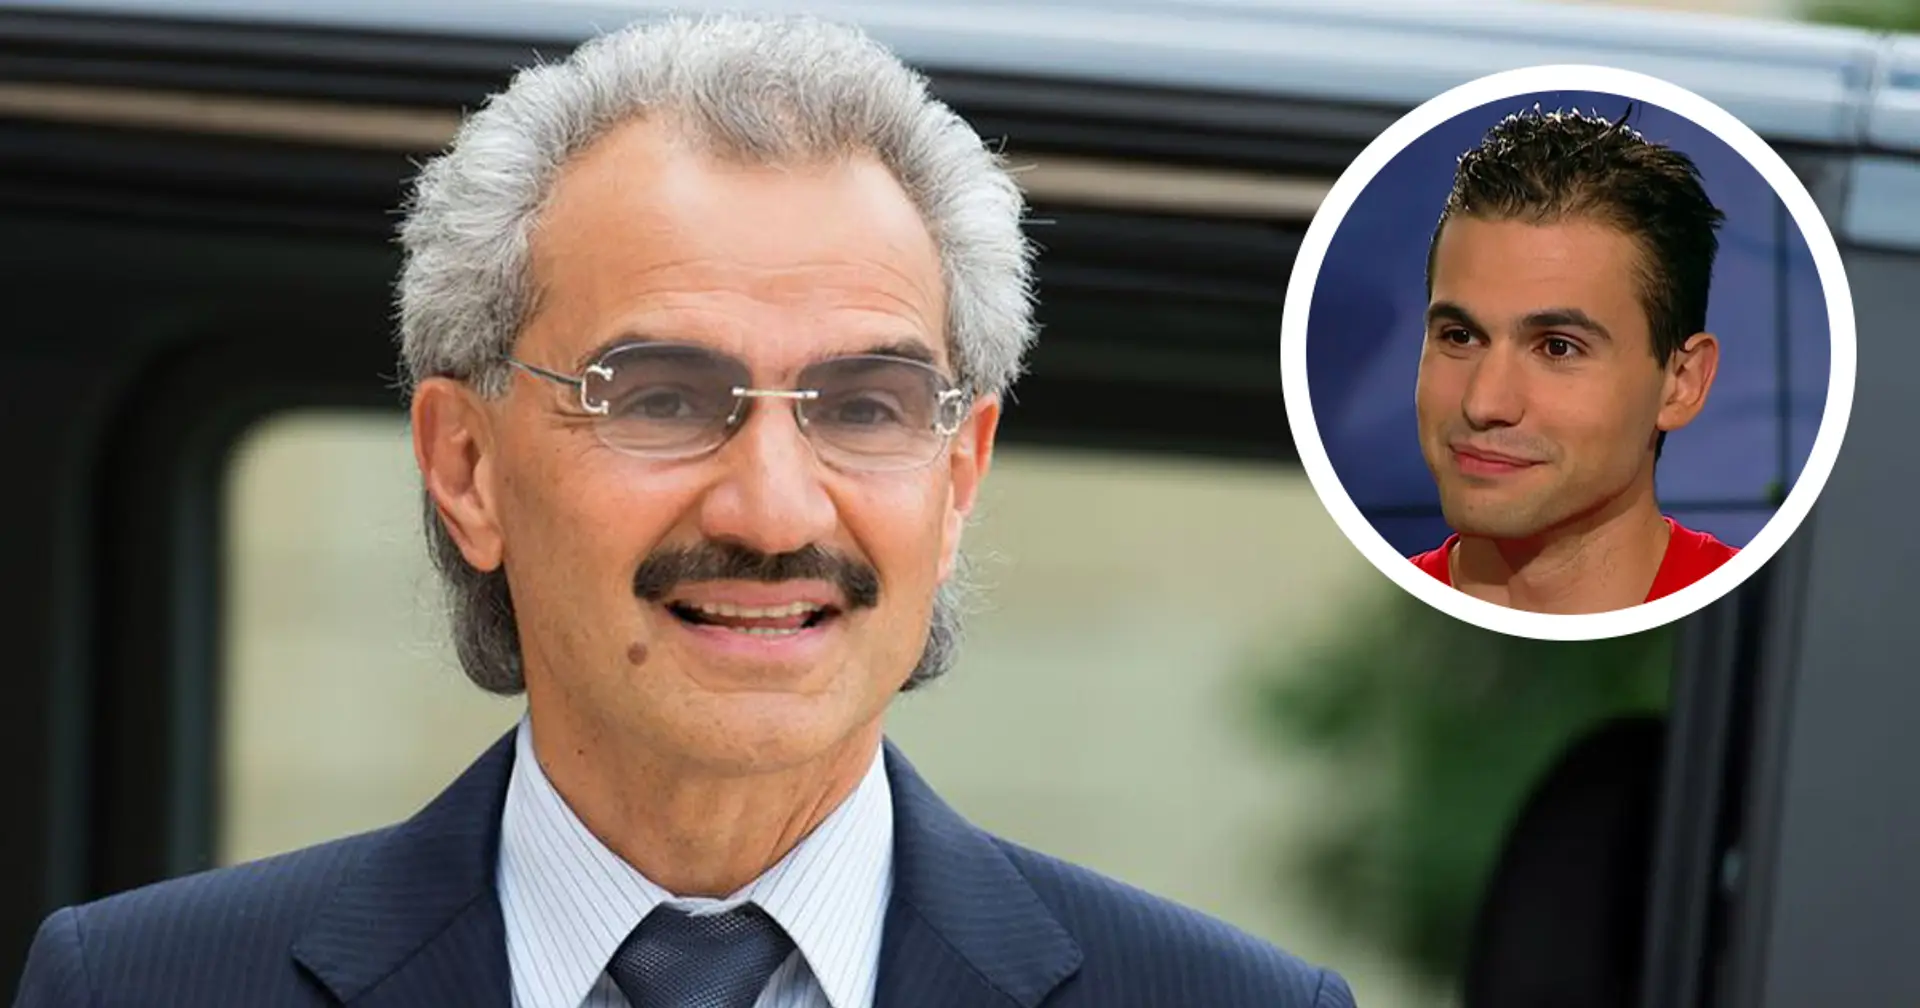 "Il y a beaucoup de fantasmes concernant l’arrivée du prince Ben Talal à l'OM, mais d’autres clubs sont aujourd’hui plus sexy à acheter" explique Romain Molina